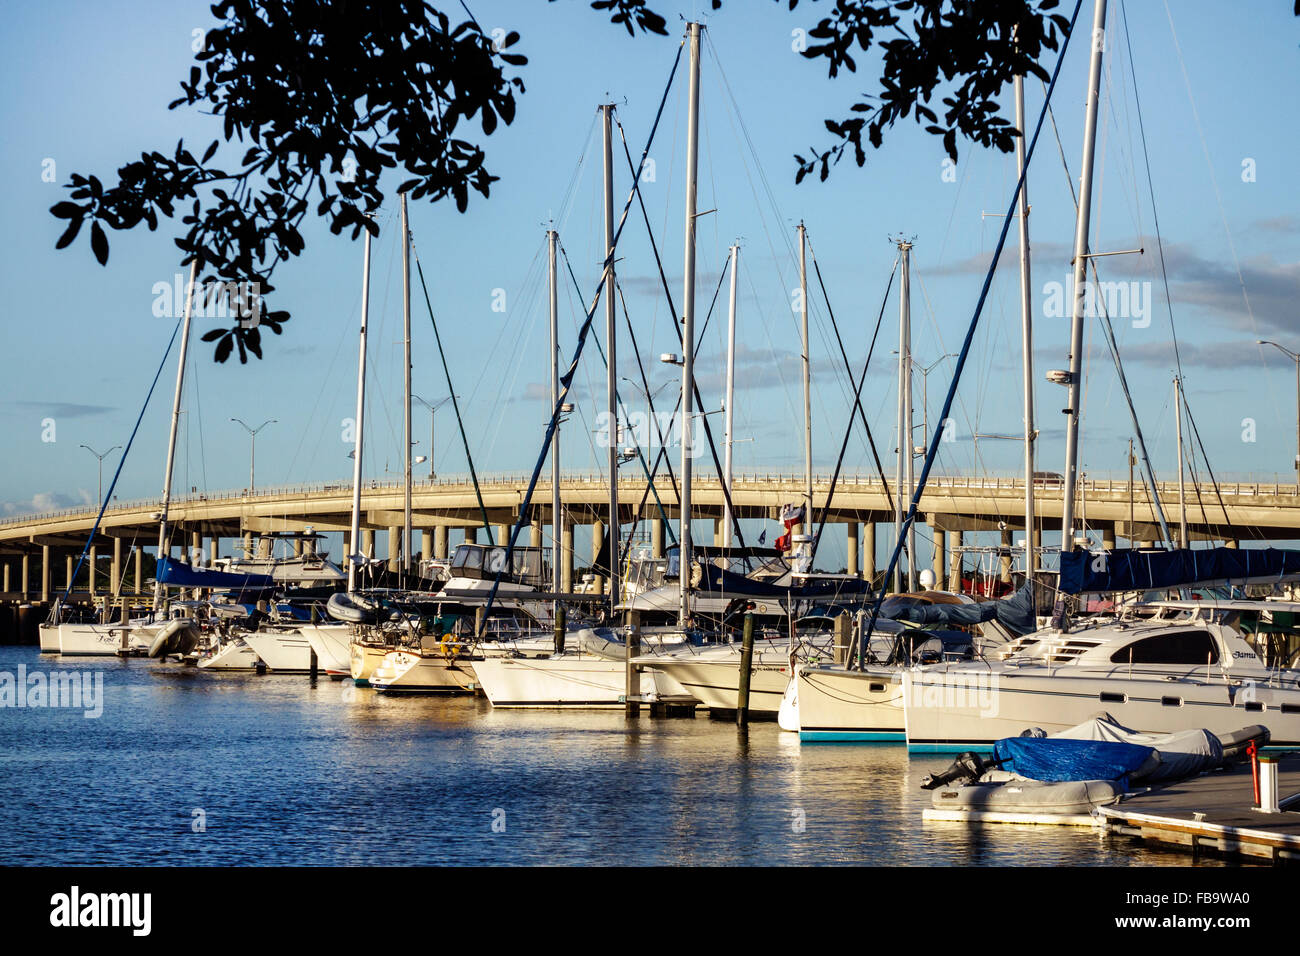 Florida, Bradenton, Manatee River, Wasser, Riverwalk Park, Green Bridge, Waterfront, Yachthafen, Boote, FL151022081 Stockfoto